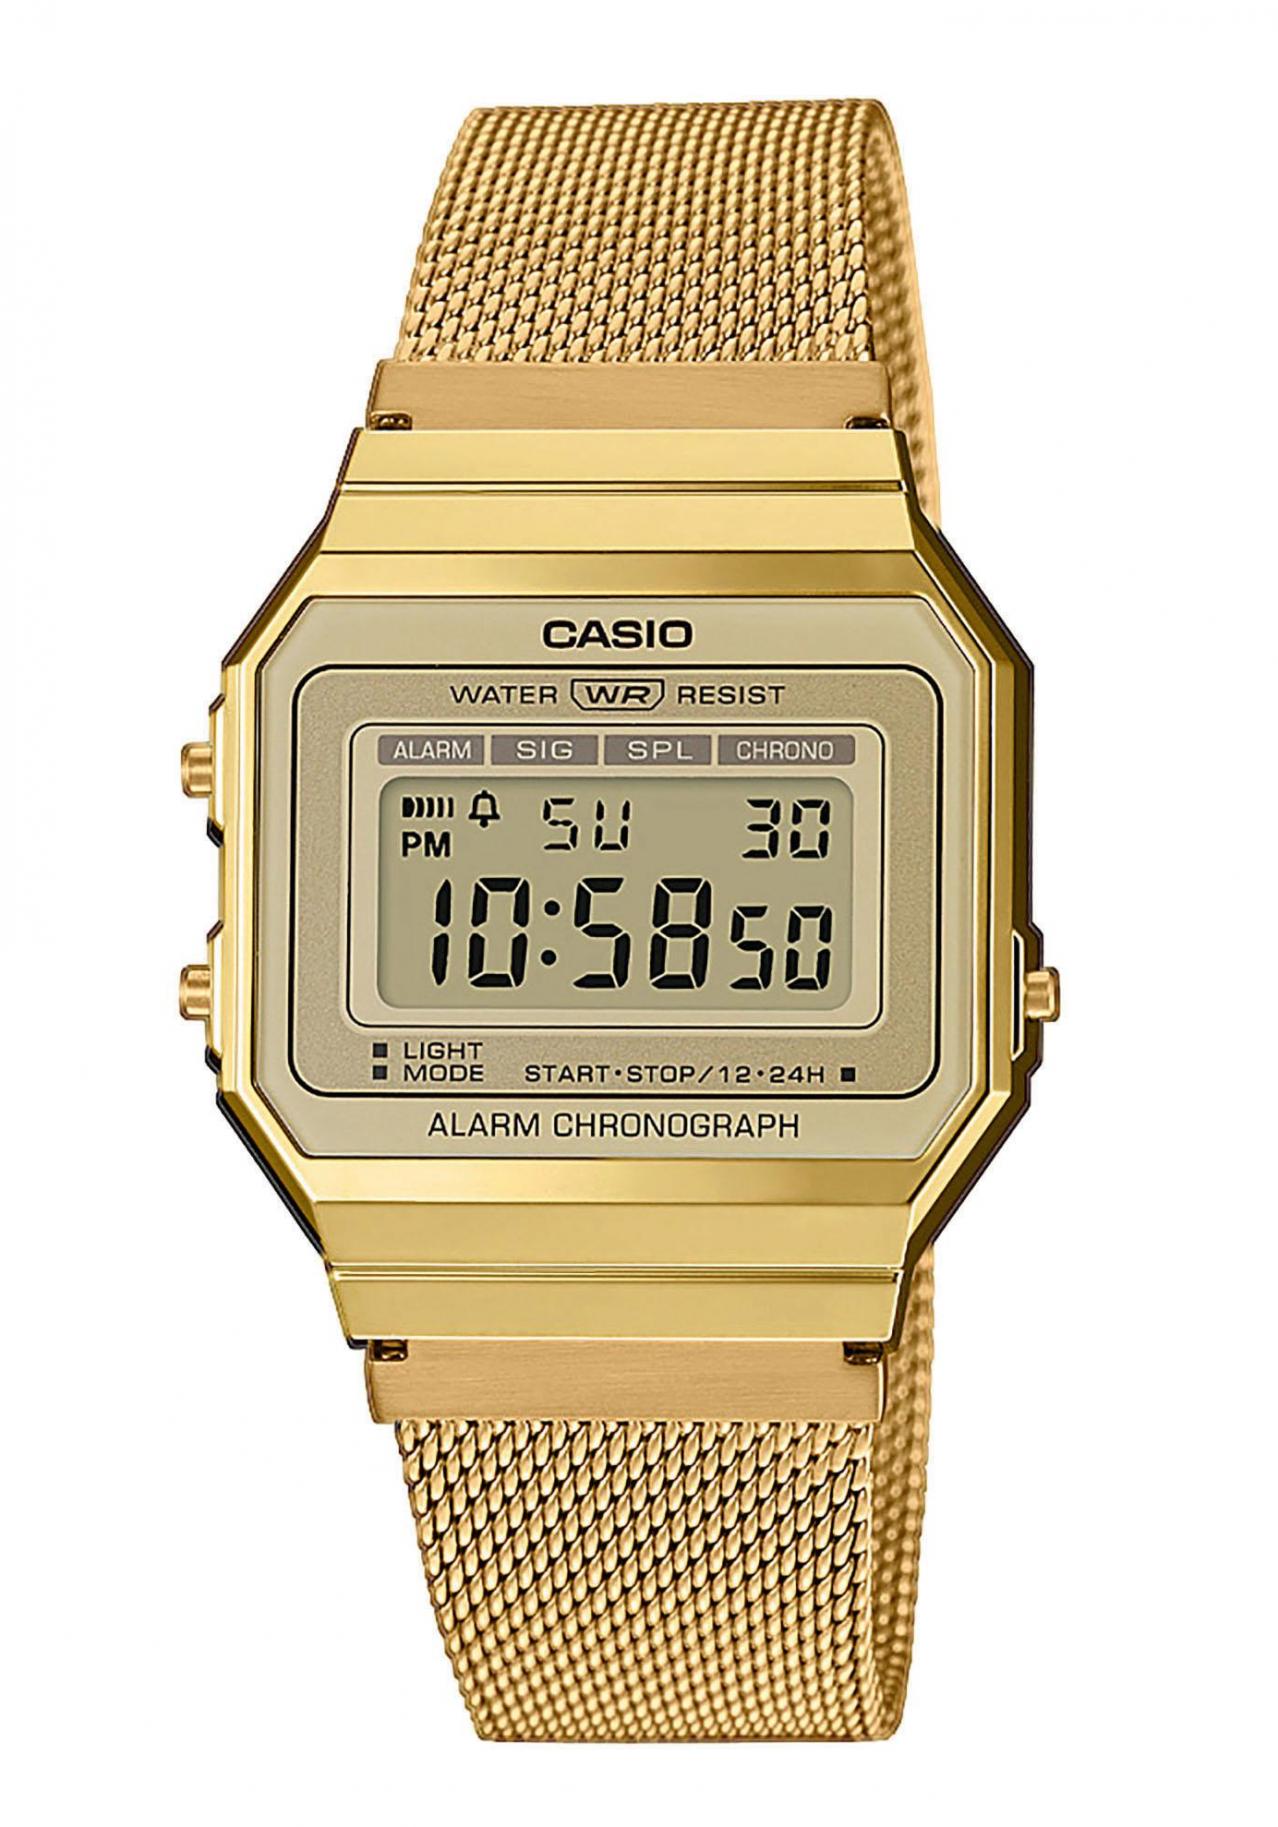 Casio Retro Edgy Wrist Watch 00wemg 9aef Nur 68 00